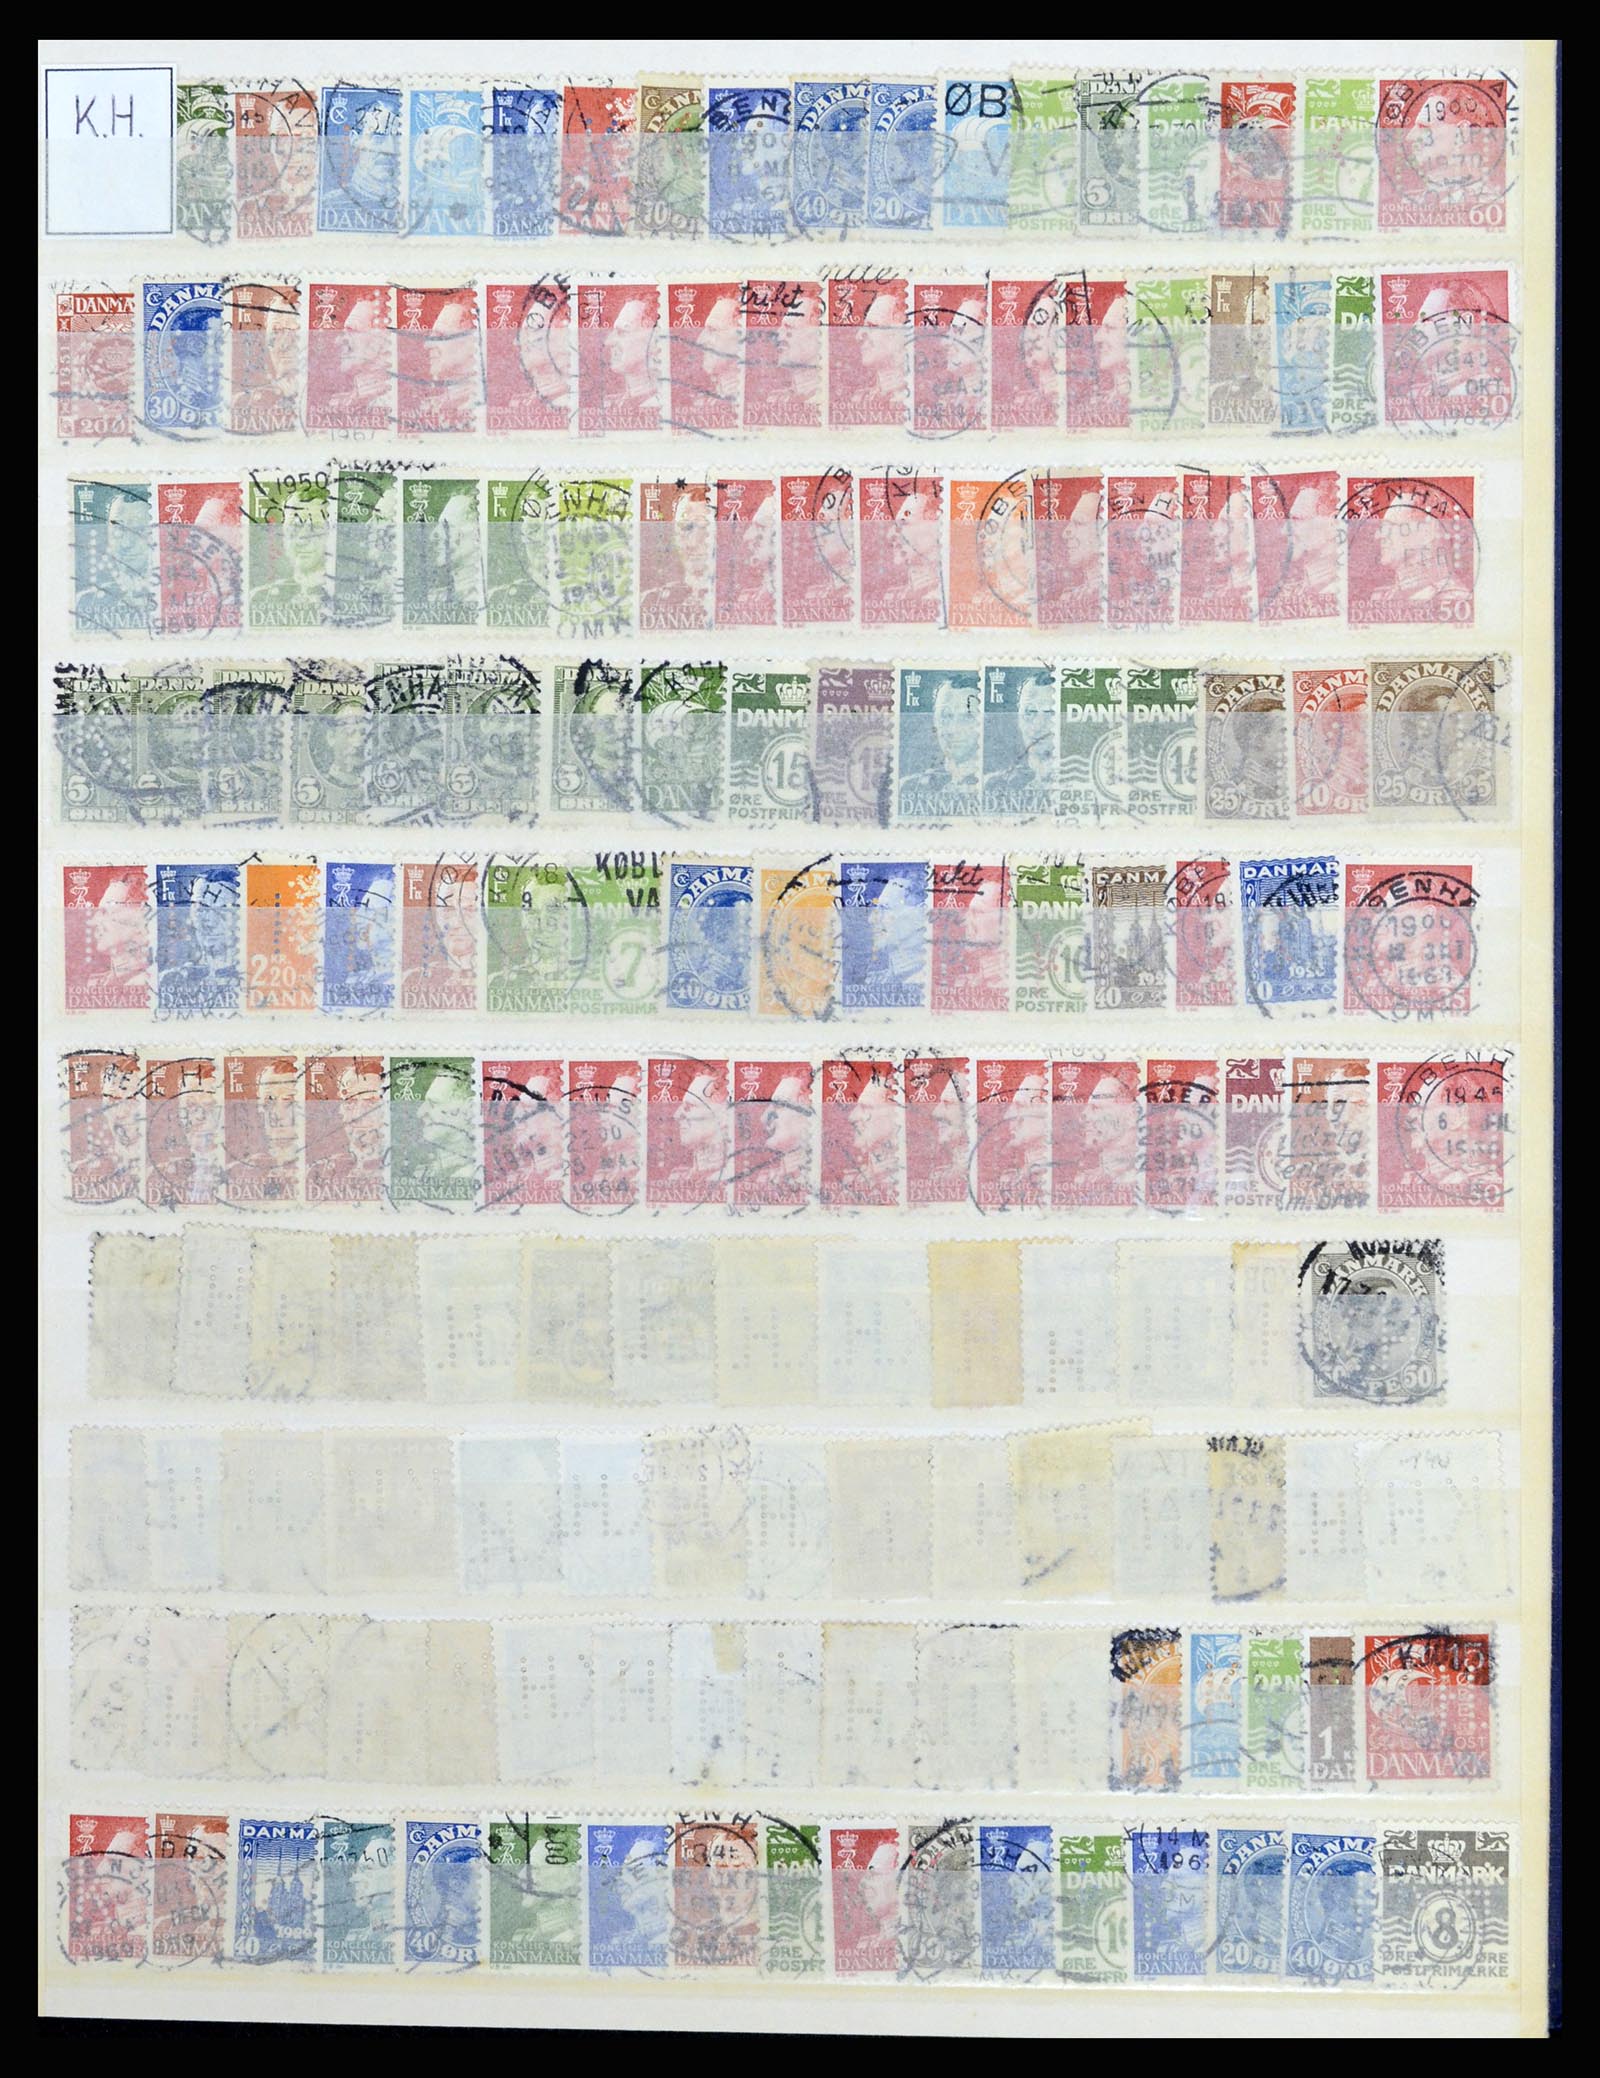 37056 052 - Postzegelverzameling 37056 Denemarken perfins.